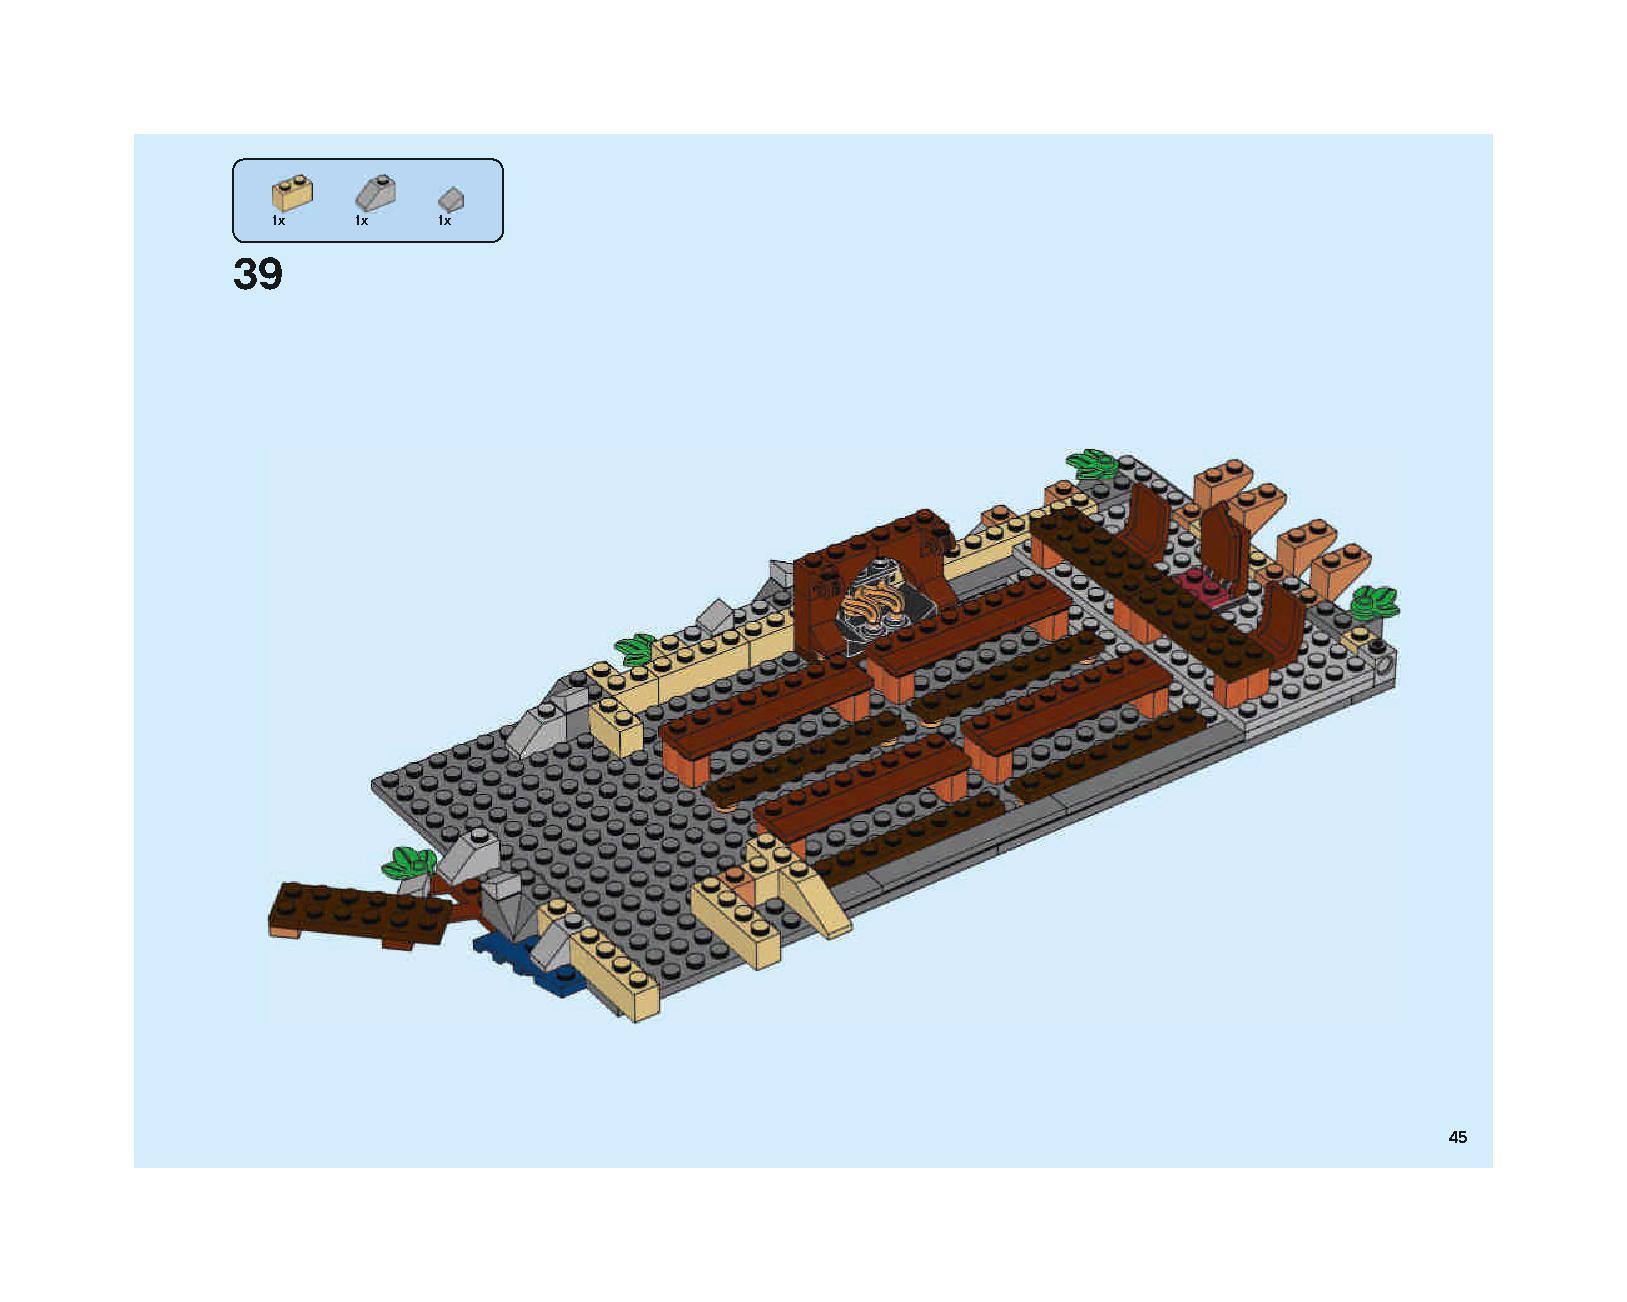 ホグワーツの大広間 75954 レゴの商品情報 レゴの説明書・組立方法 45 page